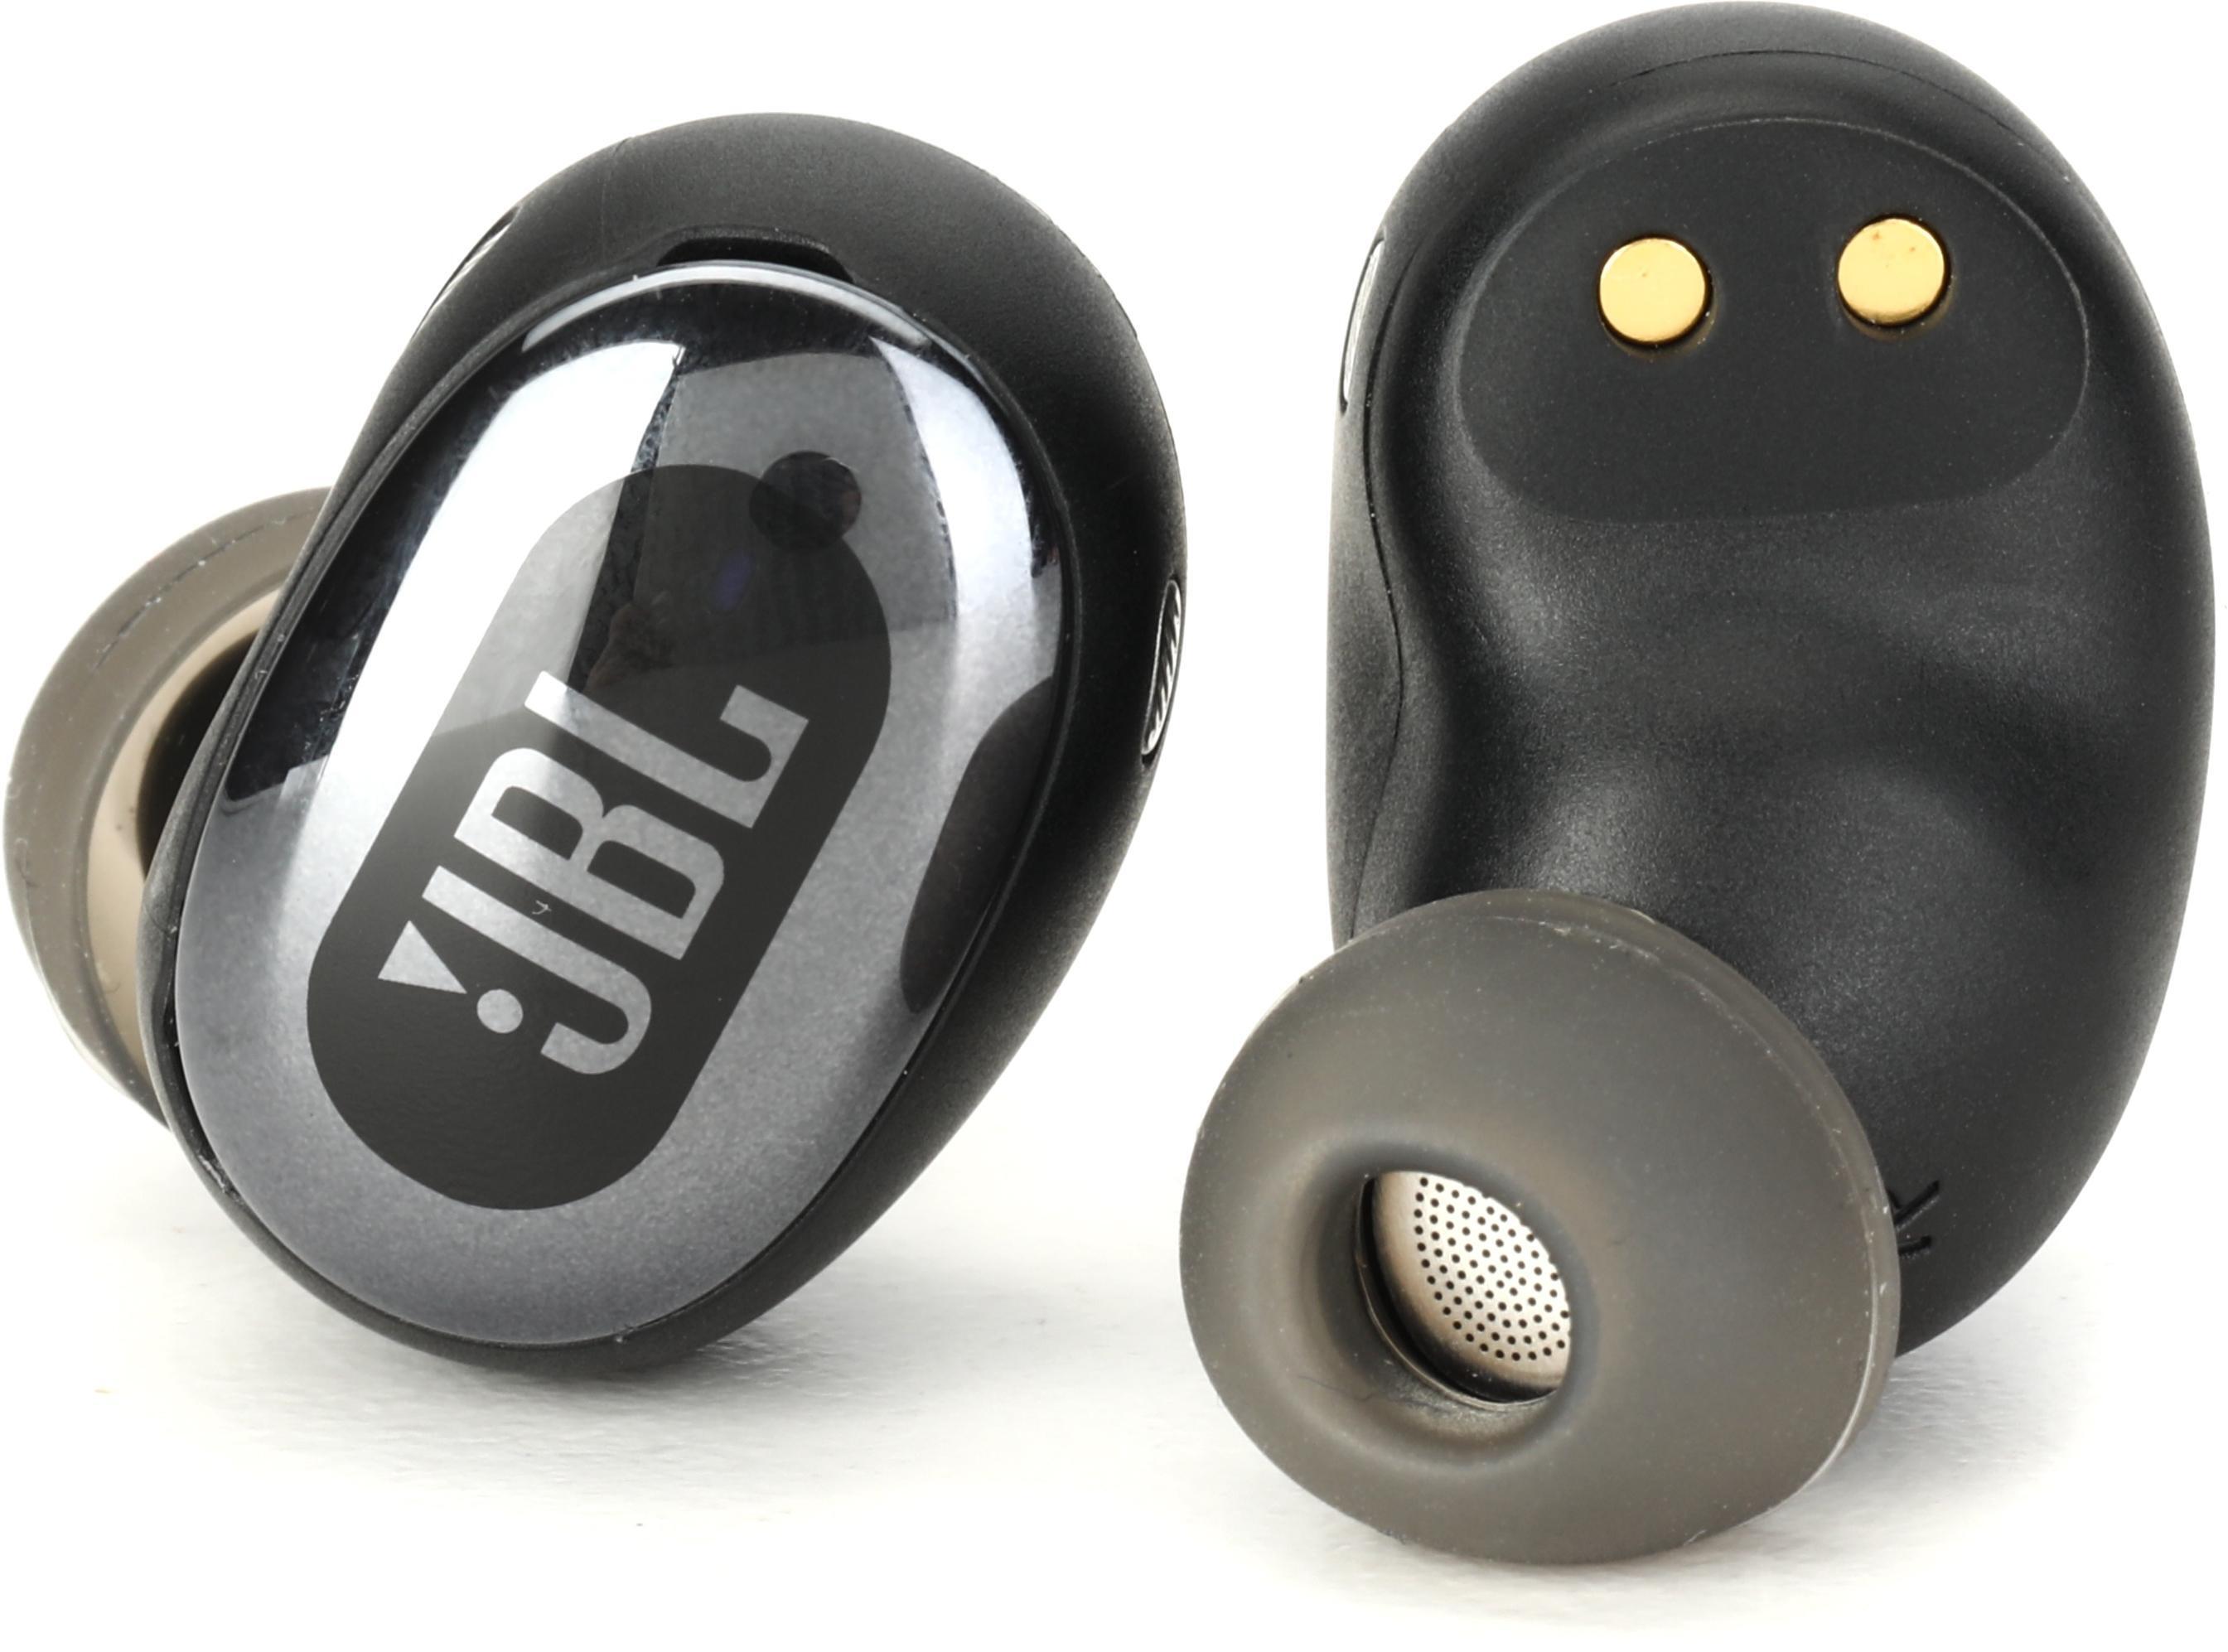 JBL Live Free 2 True Wireless Noise-canceling Earbuds - Black